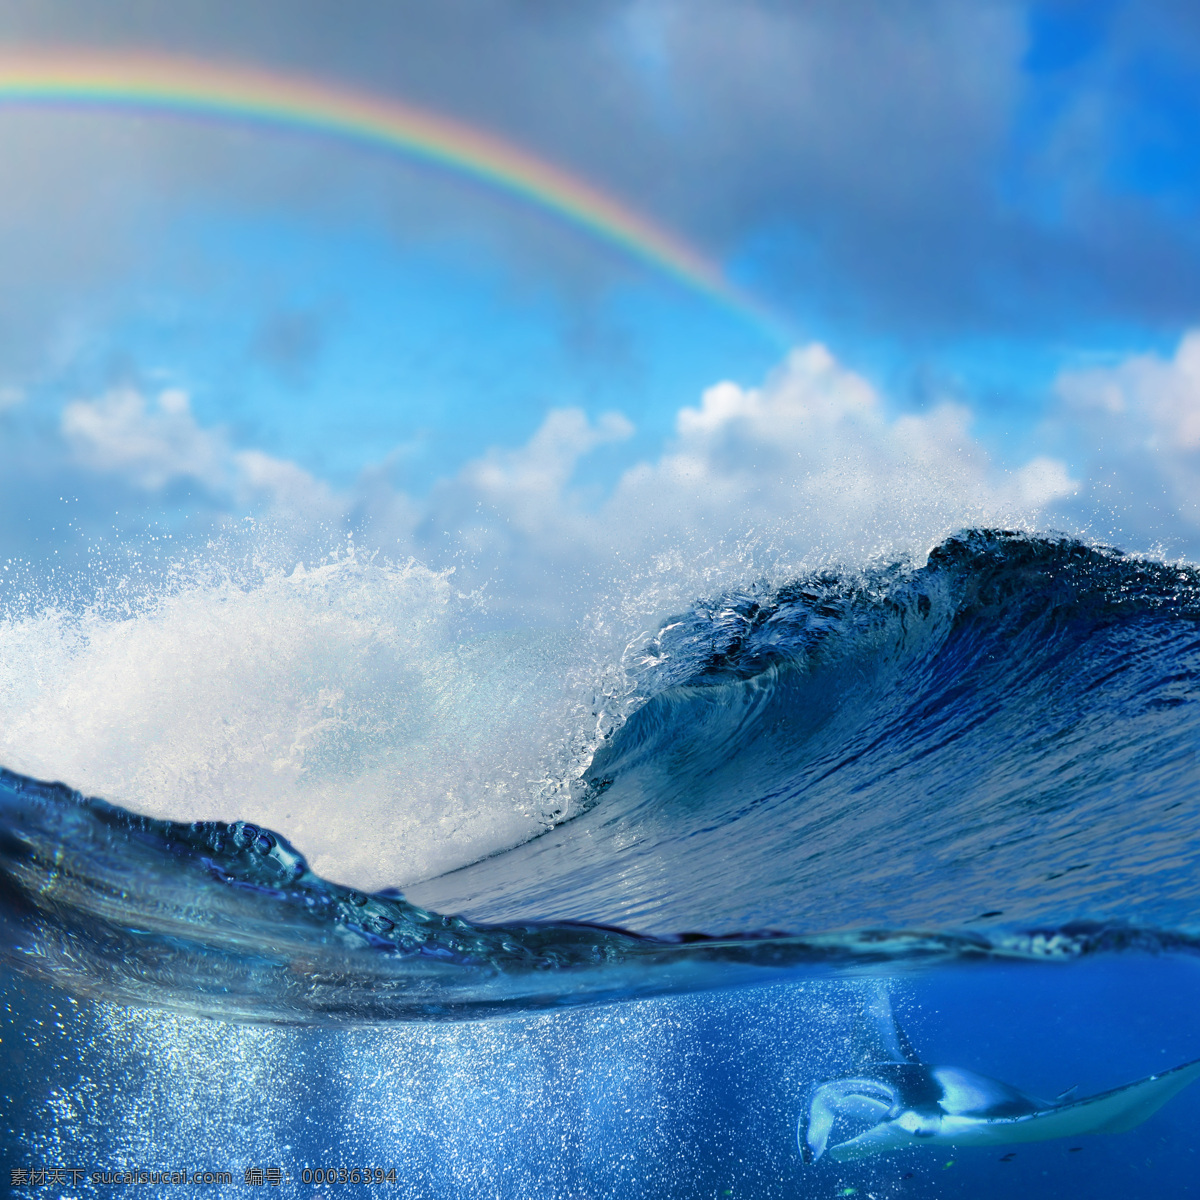 彩虹 海浪 风景 蓝天 白云 天空 大海风景 海洋风景 巨浪 海面风景 海水 波浪 波涛 海洋海边 大海图片 风景图片